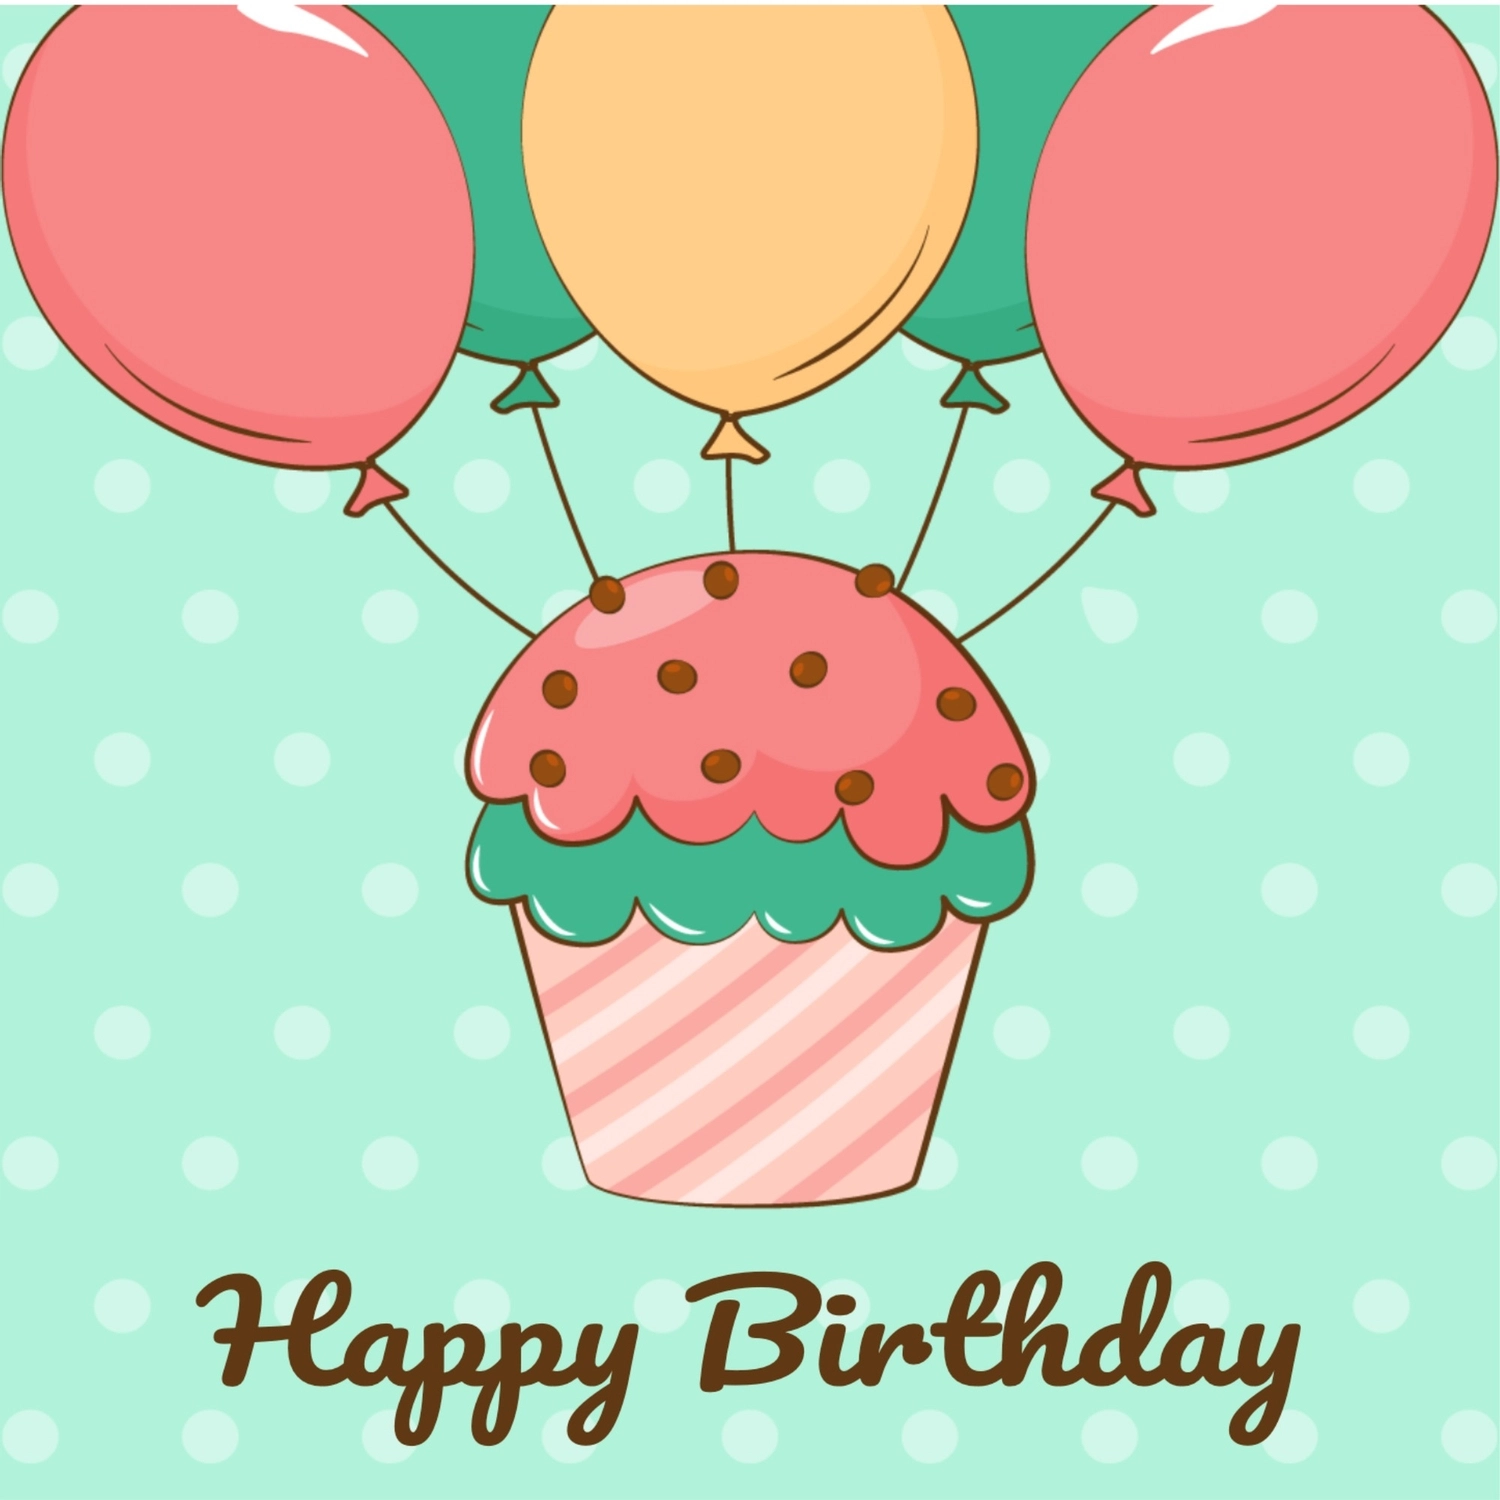 誕生日カード　風船で飛ぶカップケーキ, ガーリー, バースデーカード, 作成, 誕生日カードテンプレート